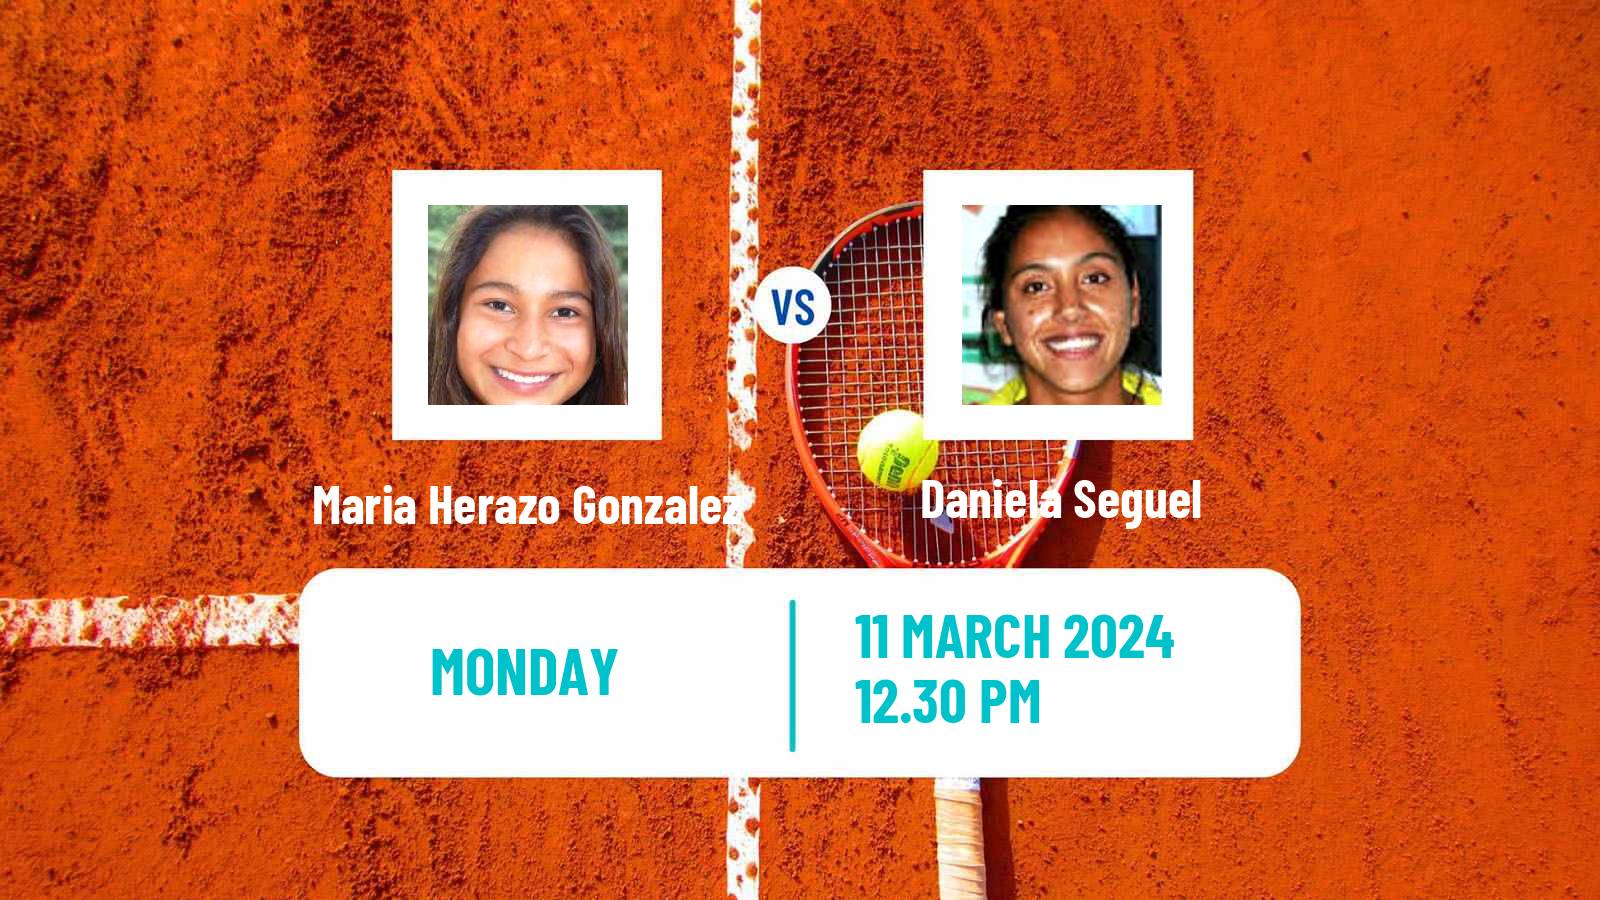 Tennis ITF W35 Santo Domingo 2 Women Maria Herazo Gonzalez - Daniela Seguel